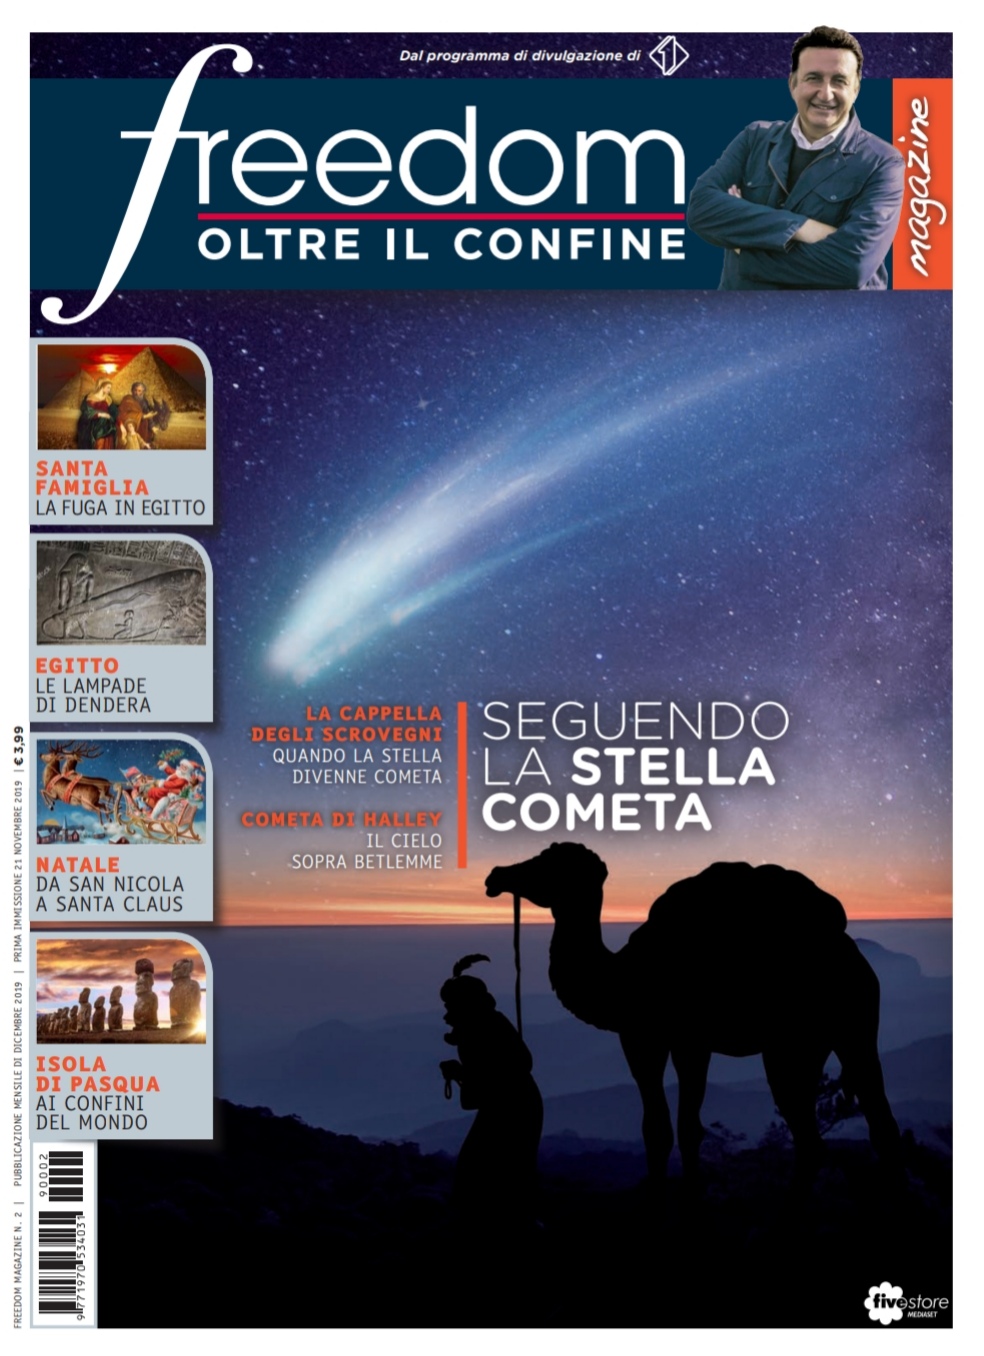 Freedom Magazine - Giotto - stella cometa